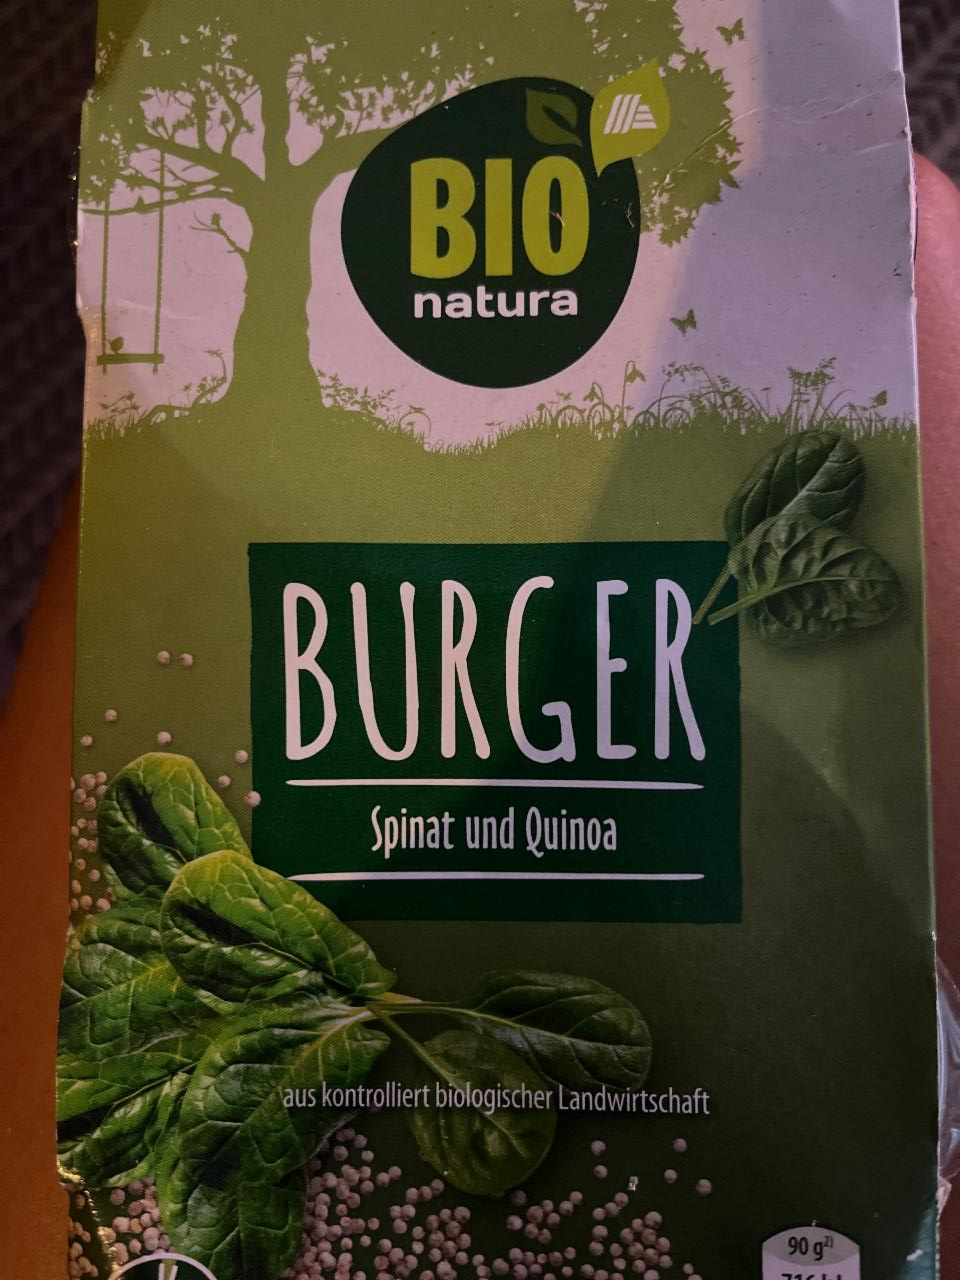 Fotografie - Burger Spinat und Quinoa Bio natura